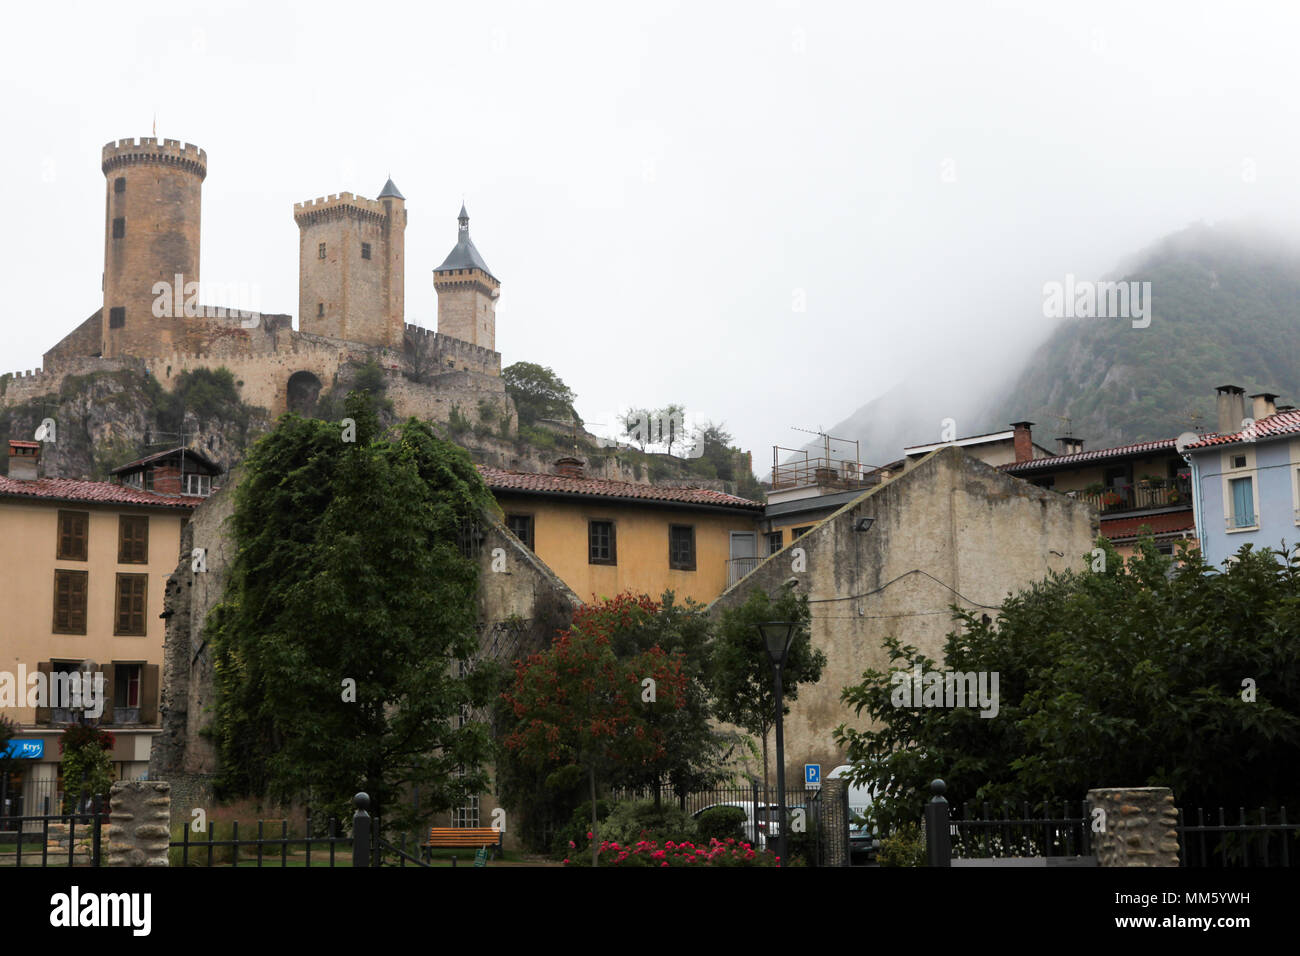 Photo du château qui domine la ville de Foix, en Ariège, France. Ce château médiéval est nommé en français : Le château de Foix. Banque D'Images